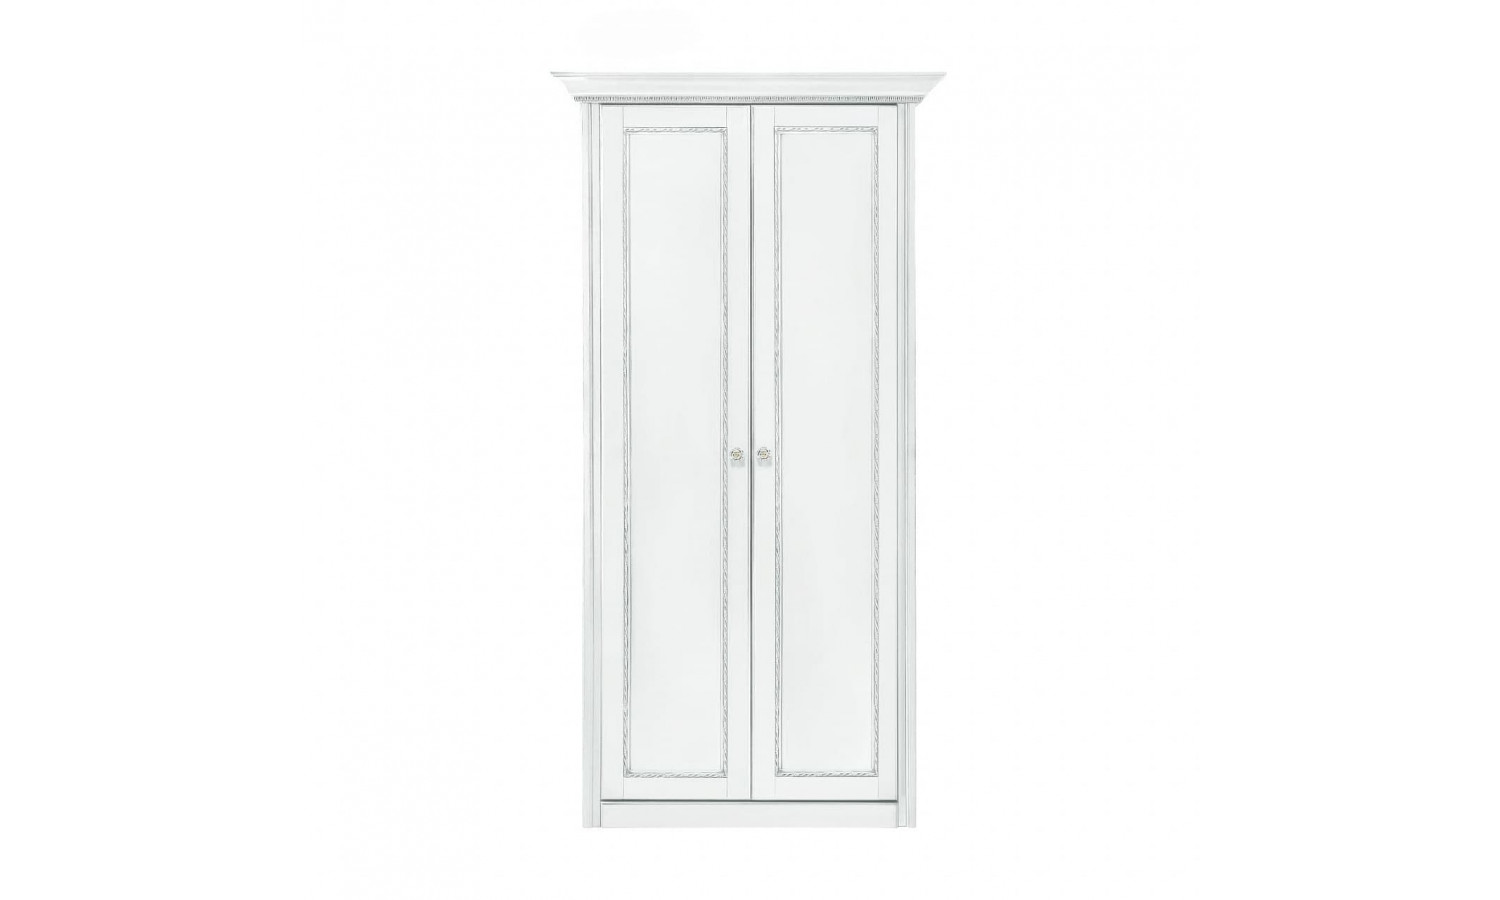 Шкаф 2 дверный с 1 полкой Палермо Белый/Патина Серебро со структурой дерева